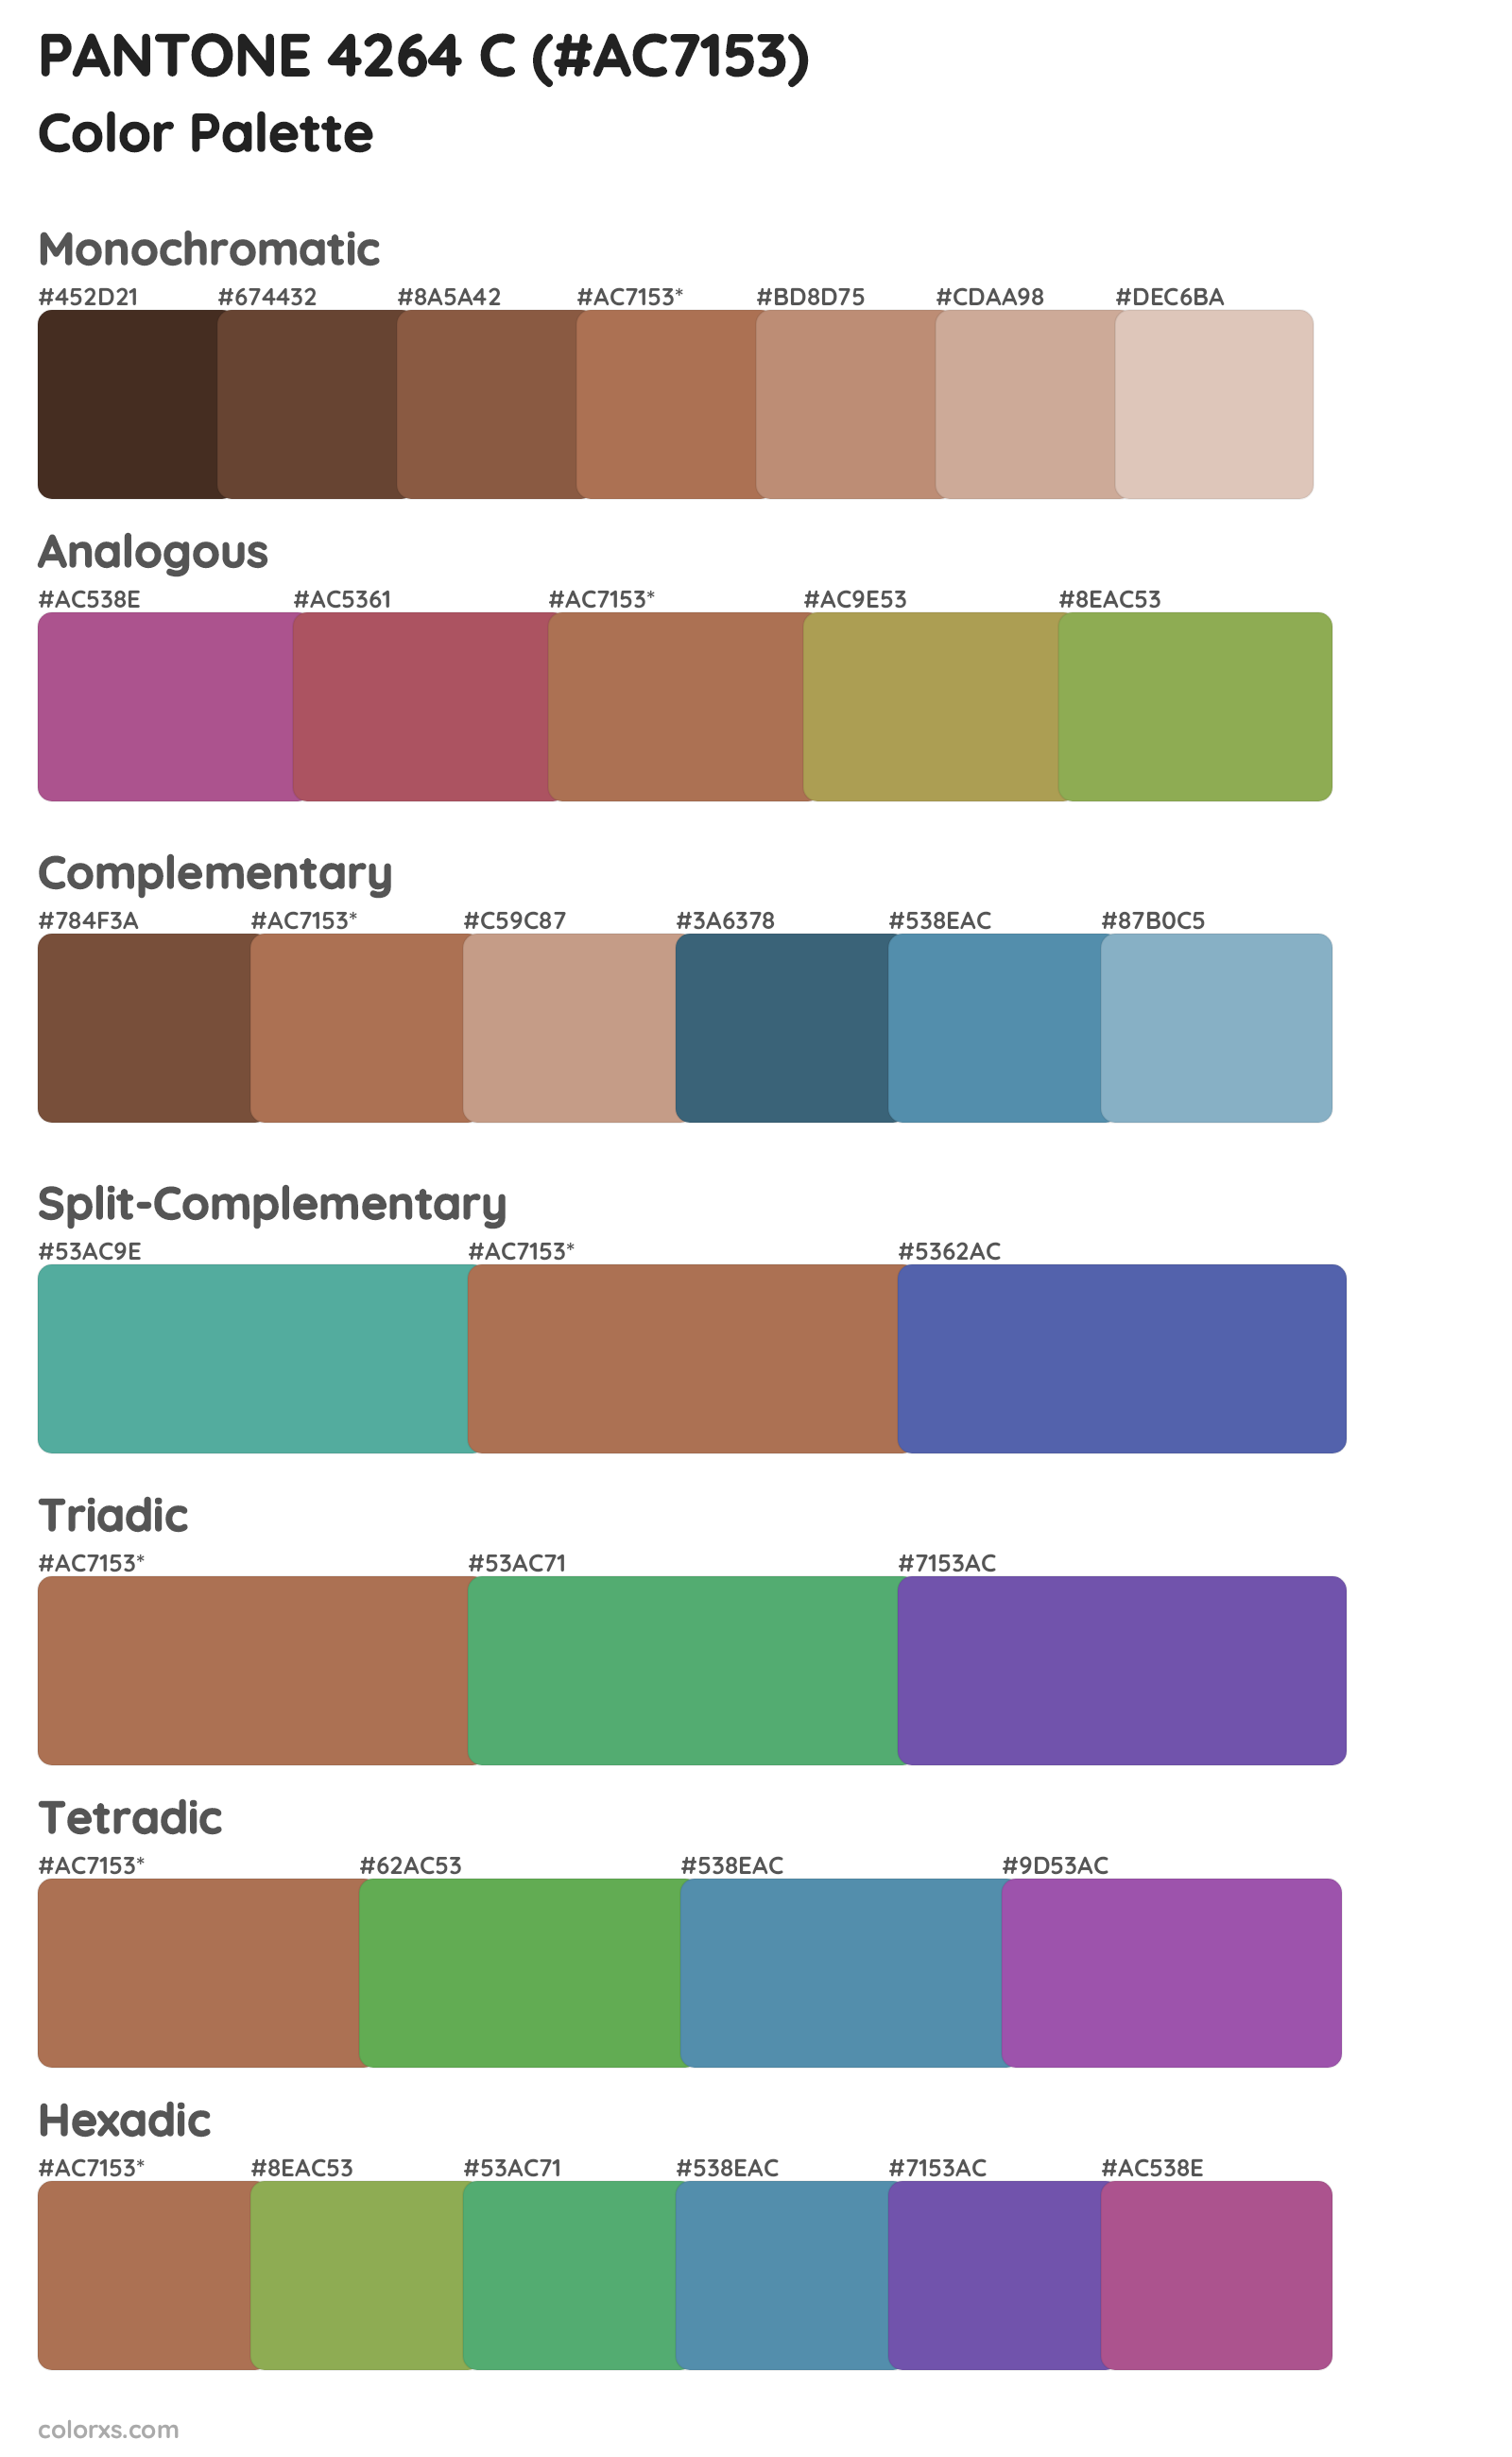 PANTONE 4264 C Color Scheme Palettes